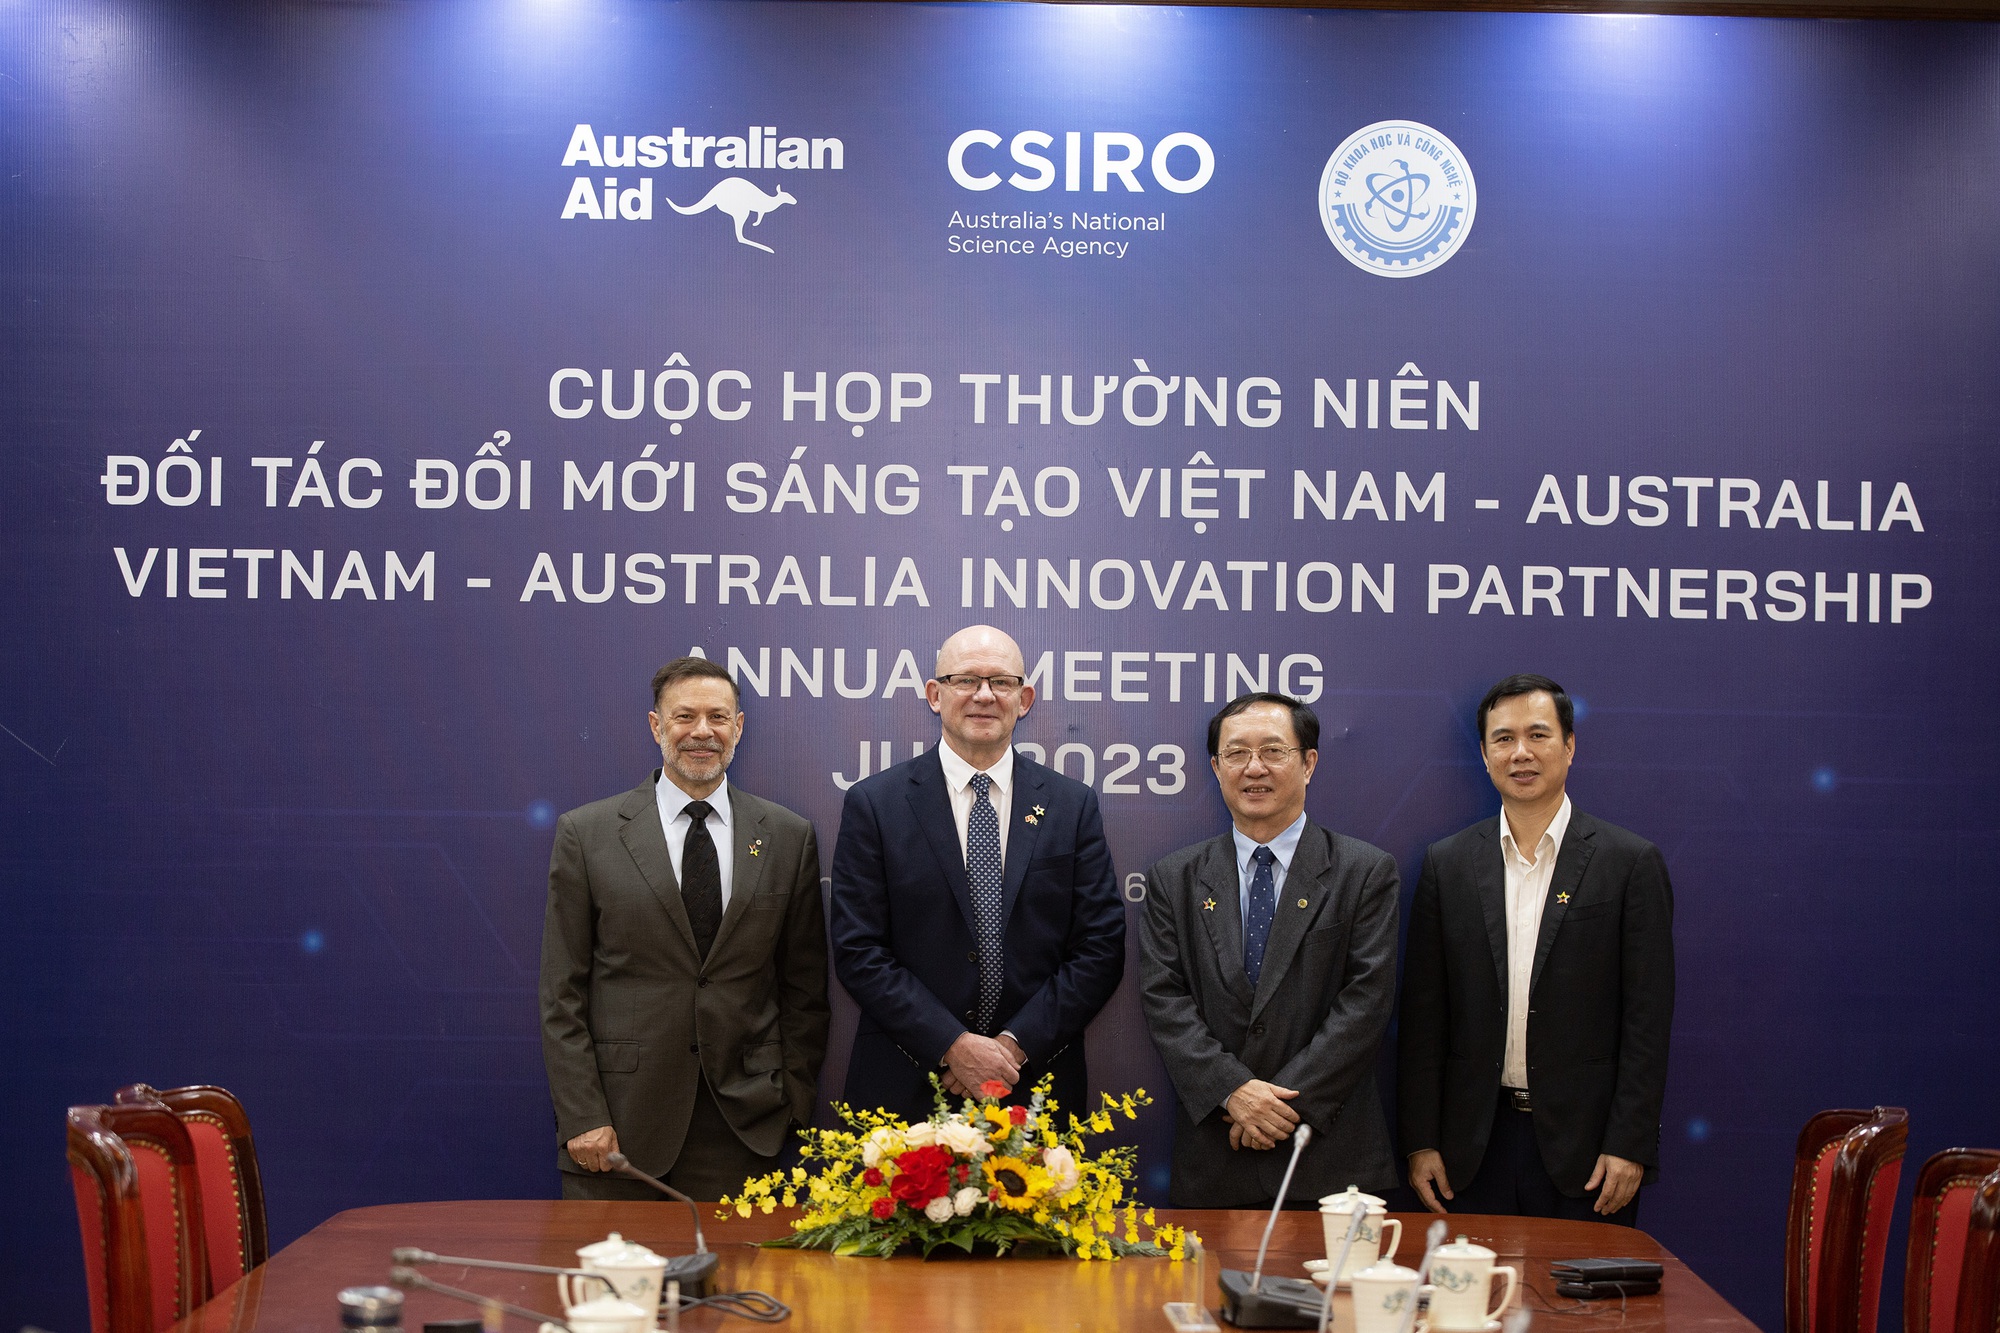 Australia tài trợ thêm 17 triệu AUD cho hệ sinh thái đổi mới sáng tạo của Việt Nam - Ảnh 1.